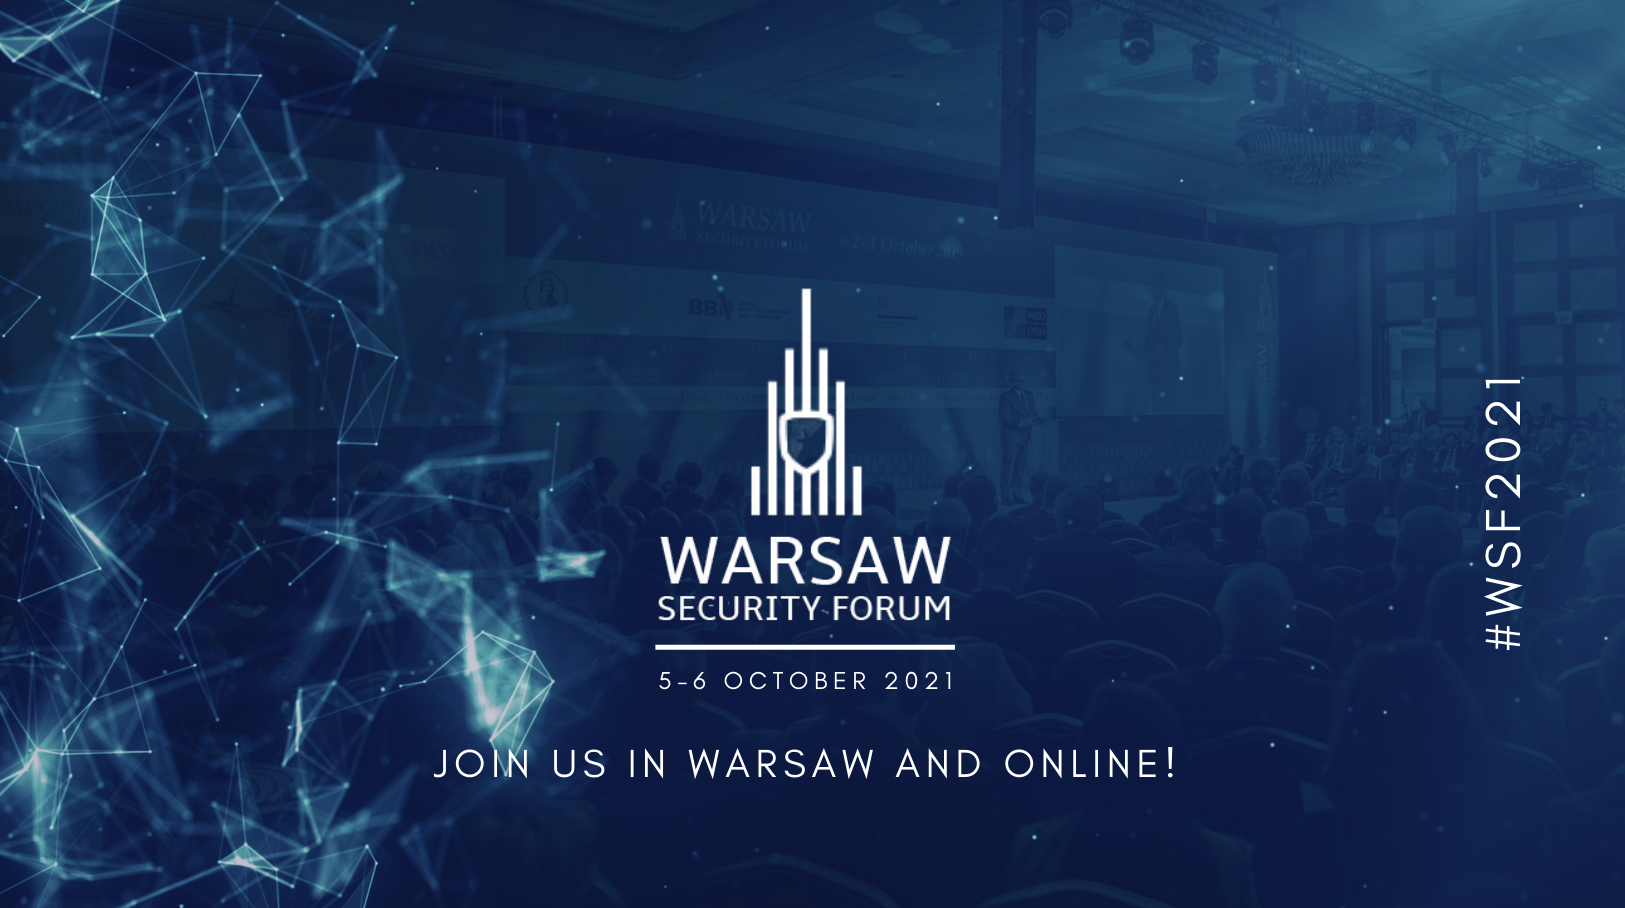 Warszawa europejska stolicą bezpieczeństwa – Warsaw Security Forum 2021